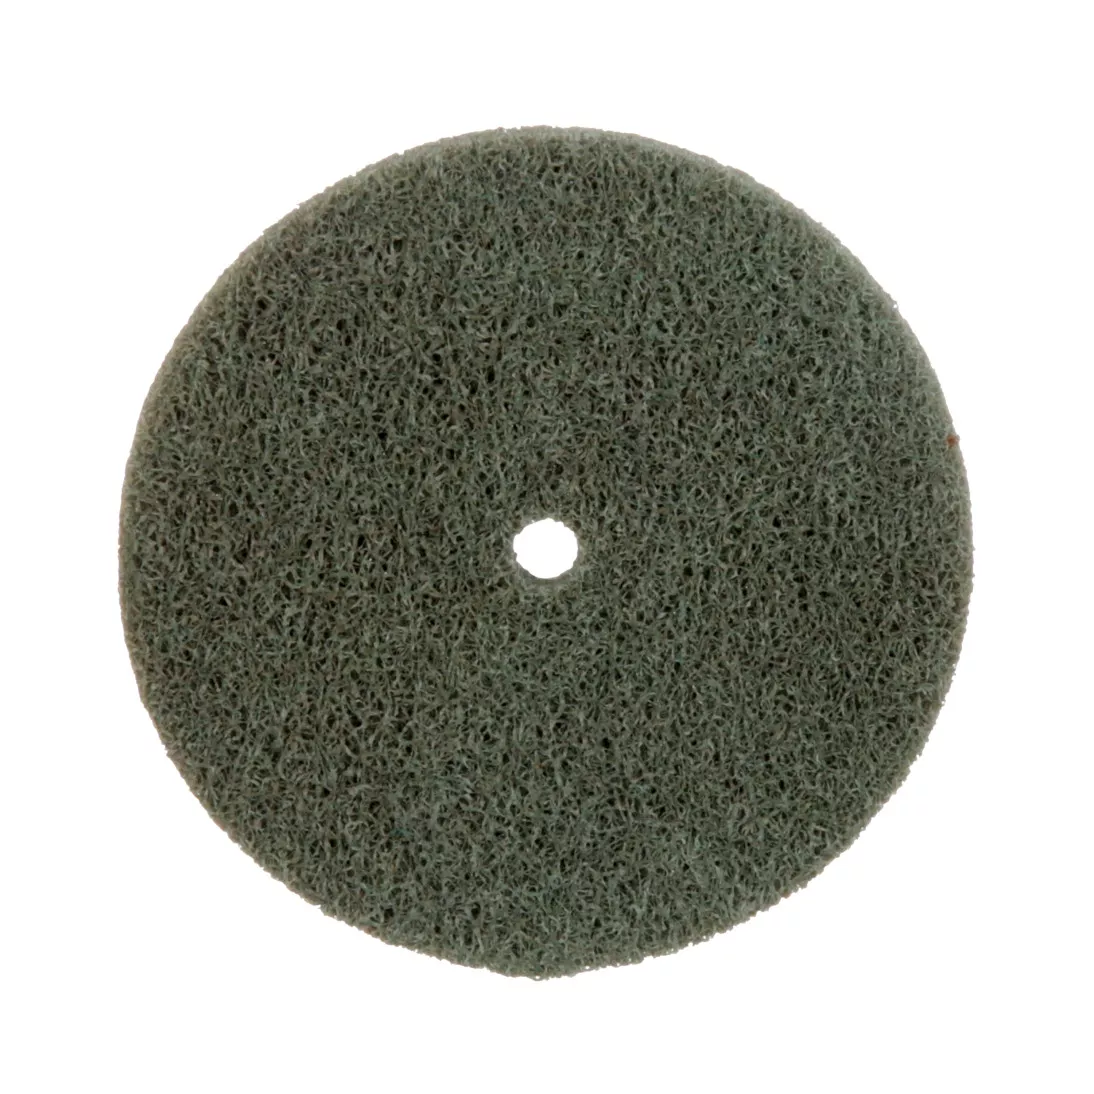 Standard Abrasives™ A/O Unitized Wheel 852135, 521 3 in x 1/4 in x 1/4
in, 10 ea/Case